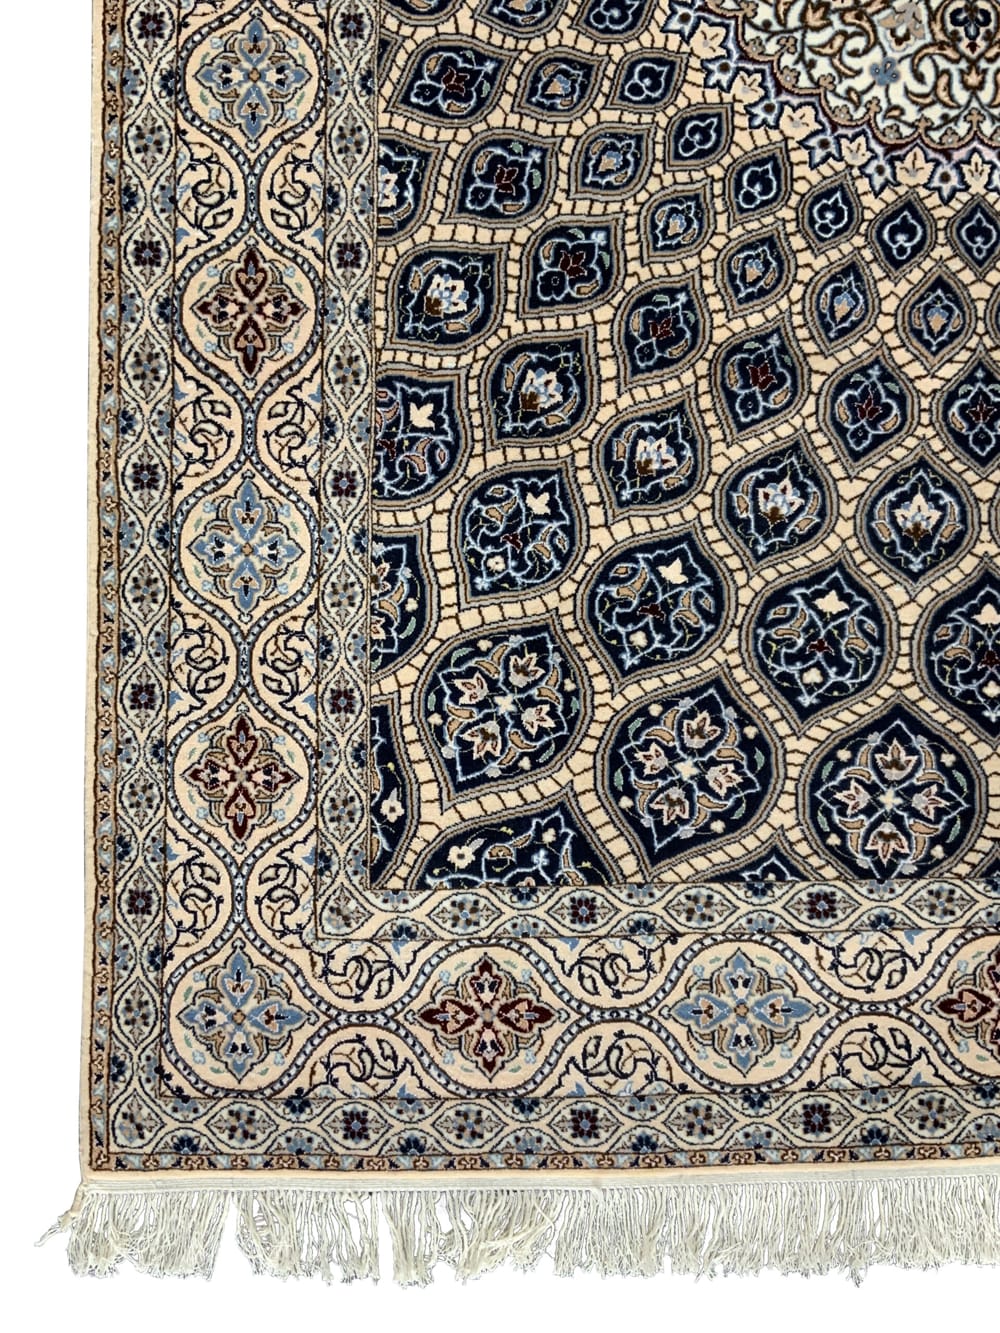 Rug# 10334, Superfine Nain 6LA, circa 1990, Gonbad or Dome design, superfine wool & silk, rare, Persia, size 227x150 cm (4)